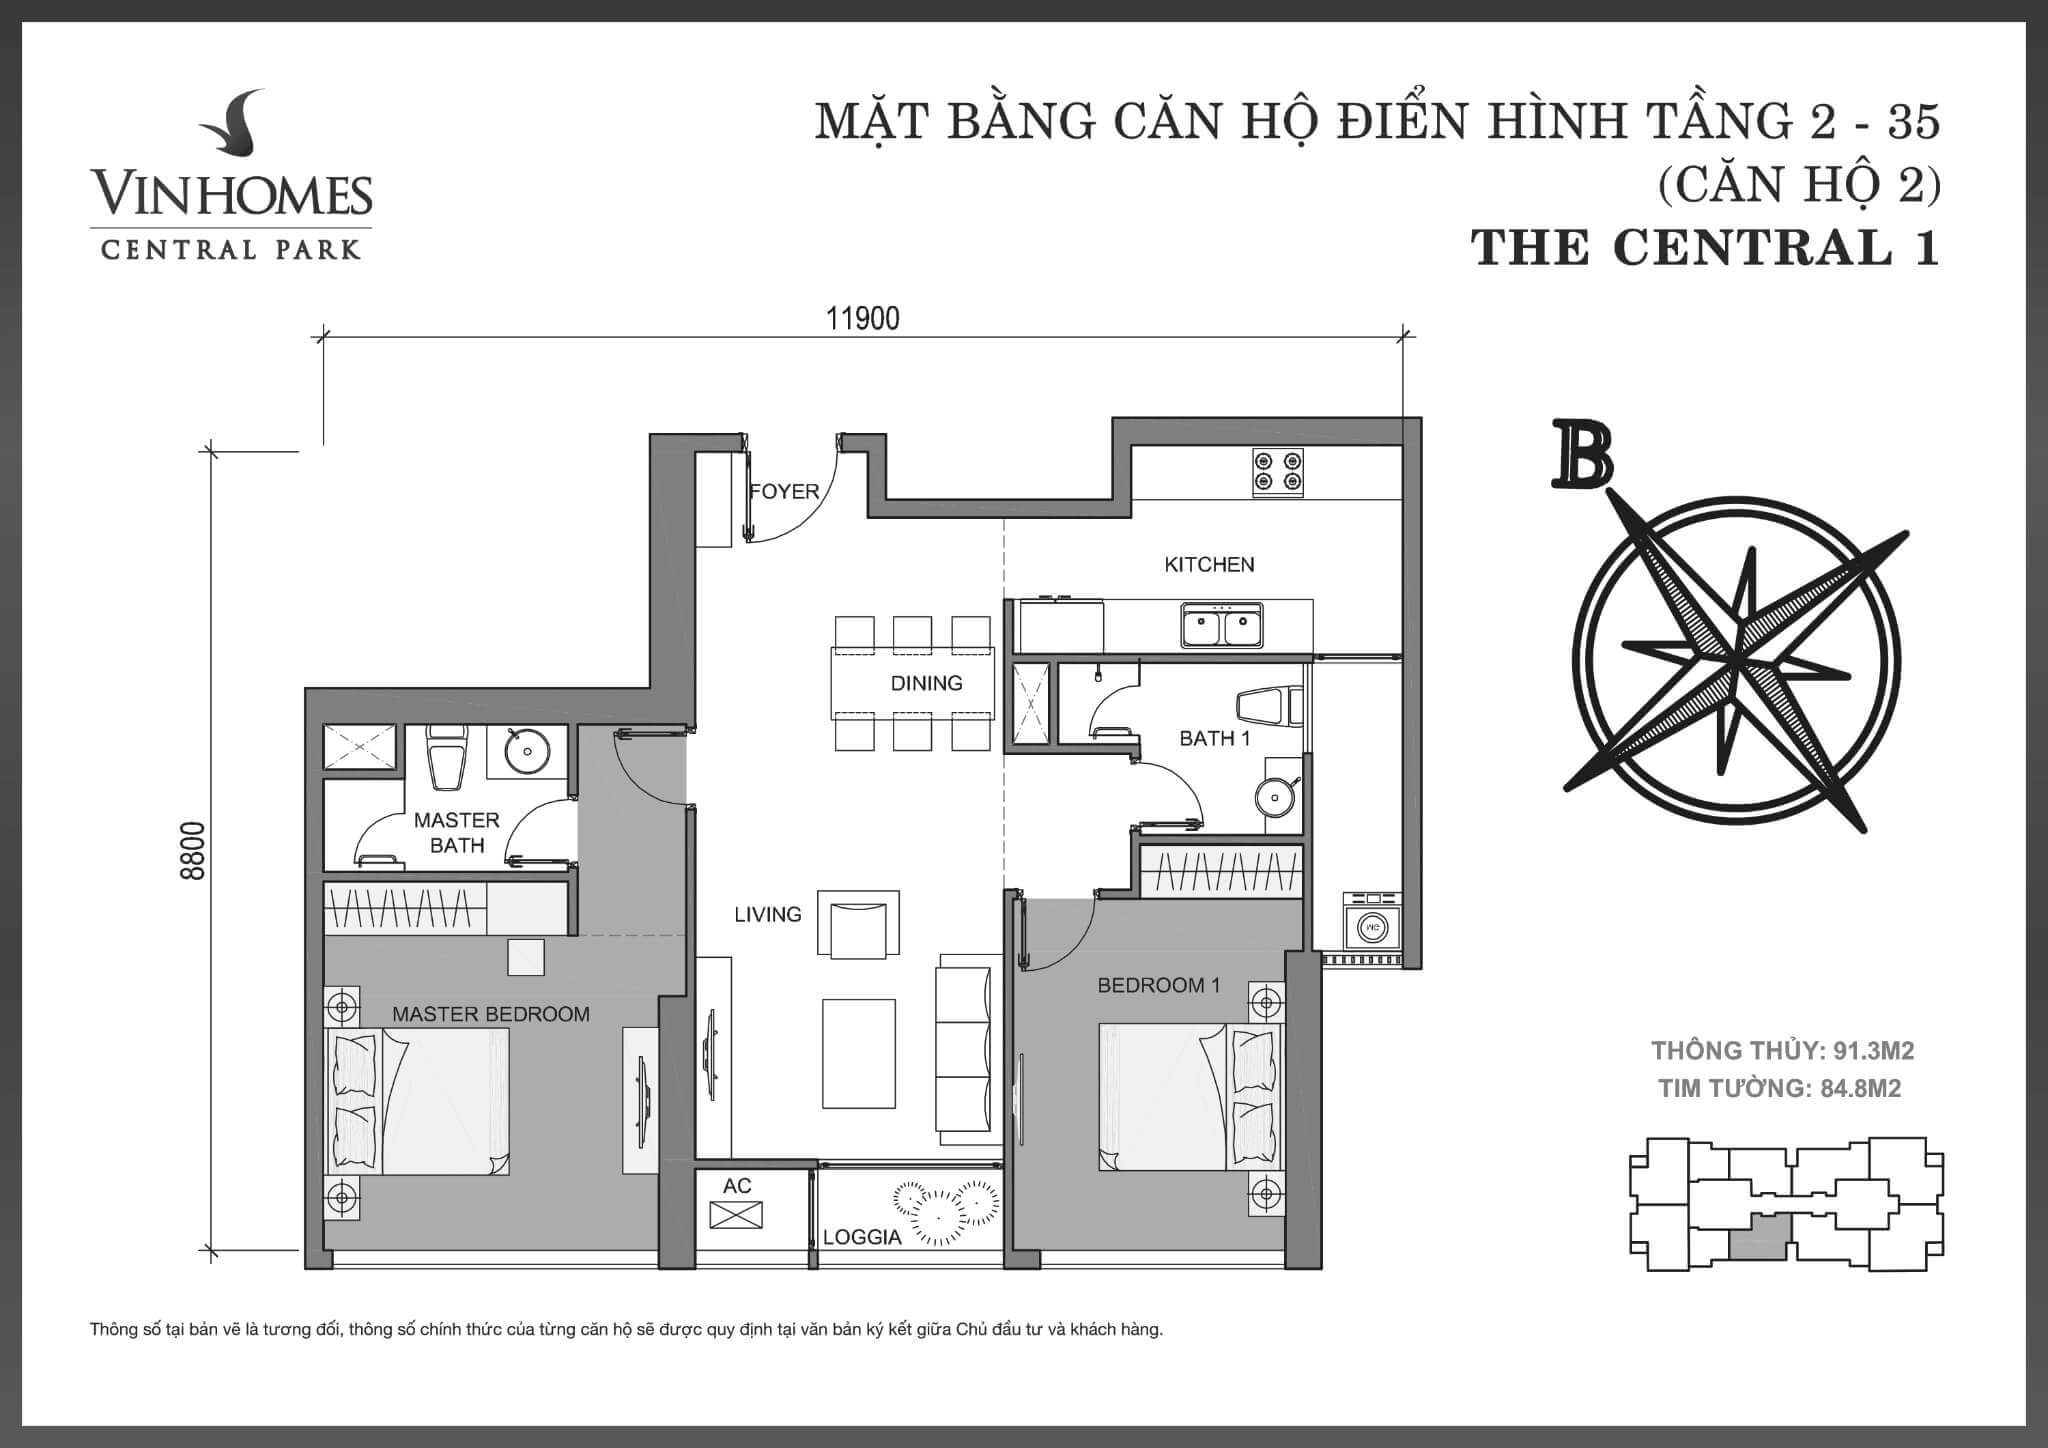 layout căn hộ số 2 Central 1